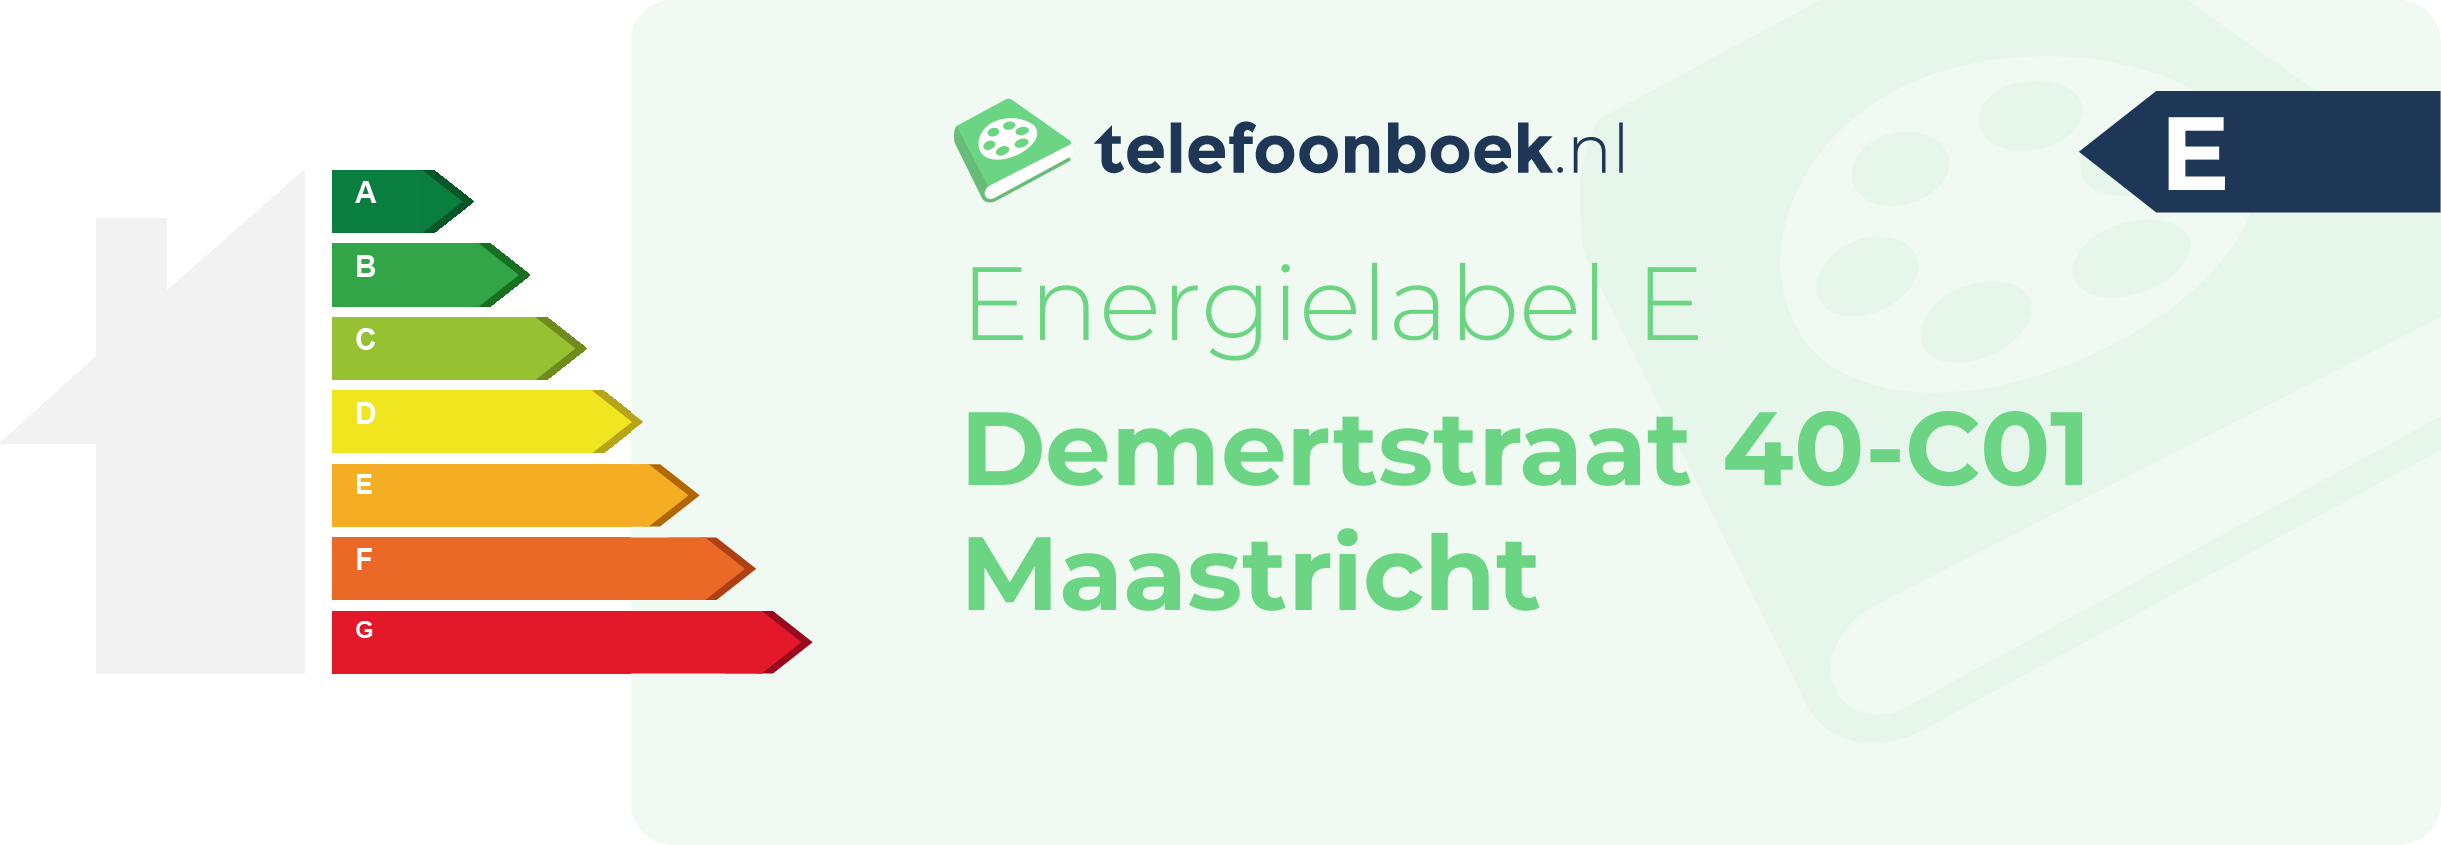 Energielabel Demertstraat 40-C01 Maastricht